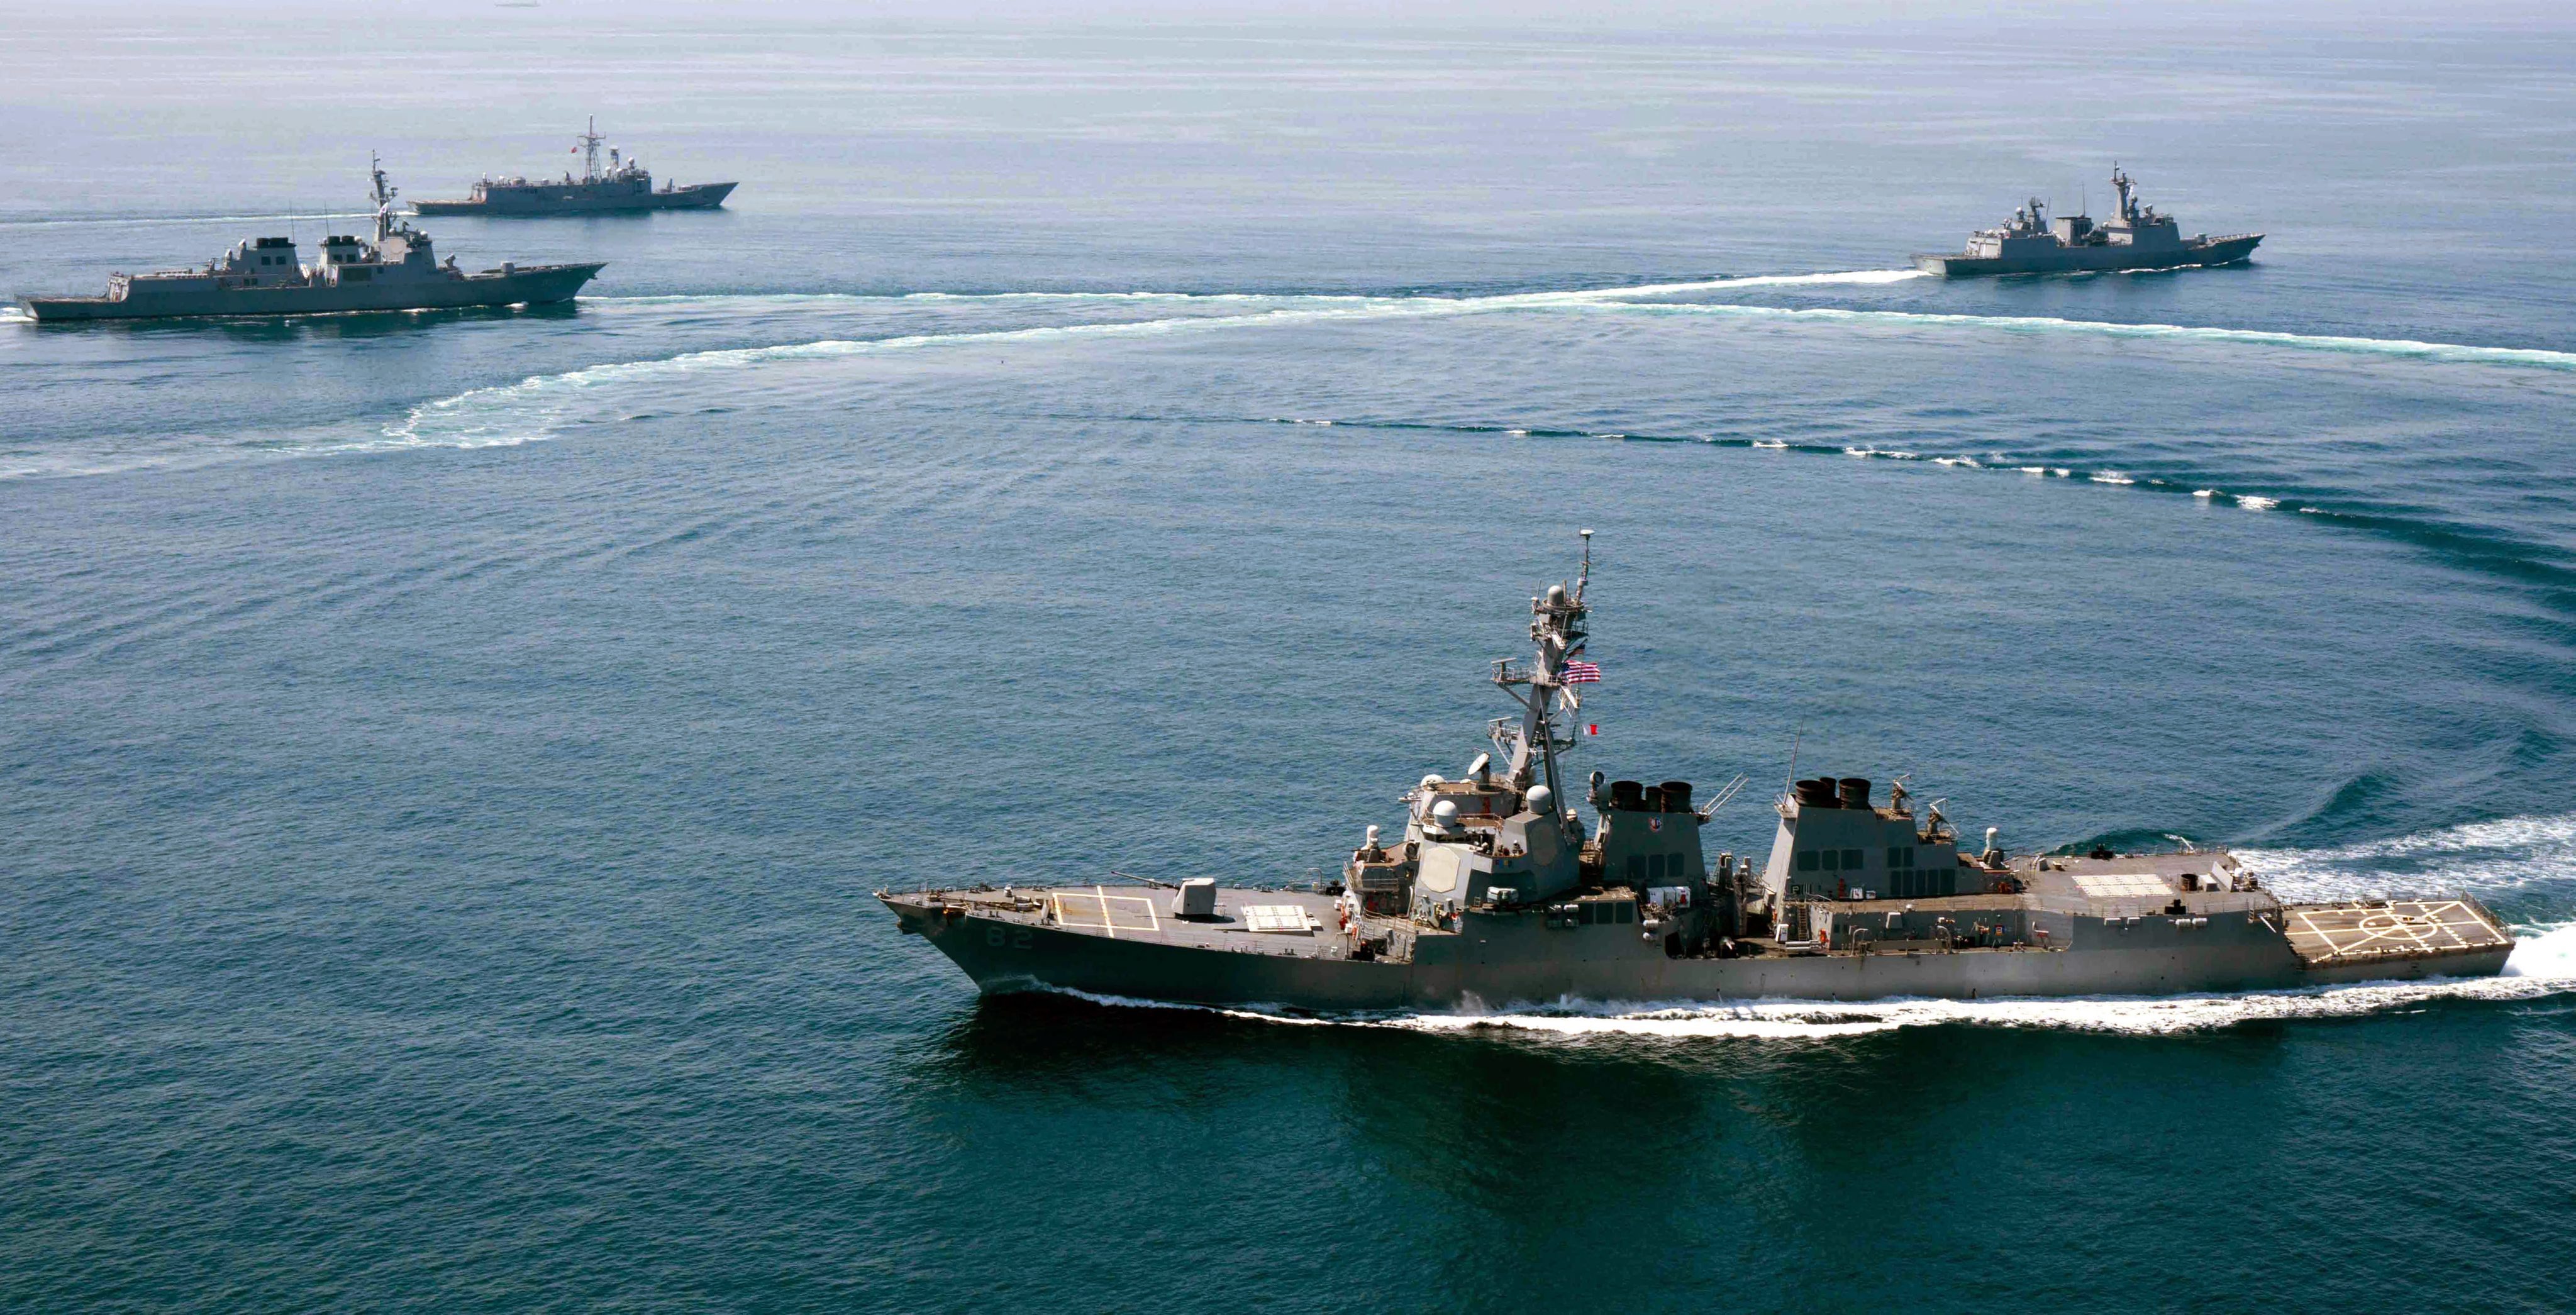 Tàu chiến của Hải quân Nhật - Mỹ trên Biển Đông